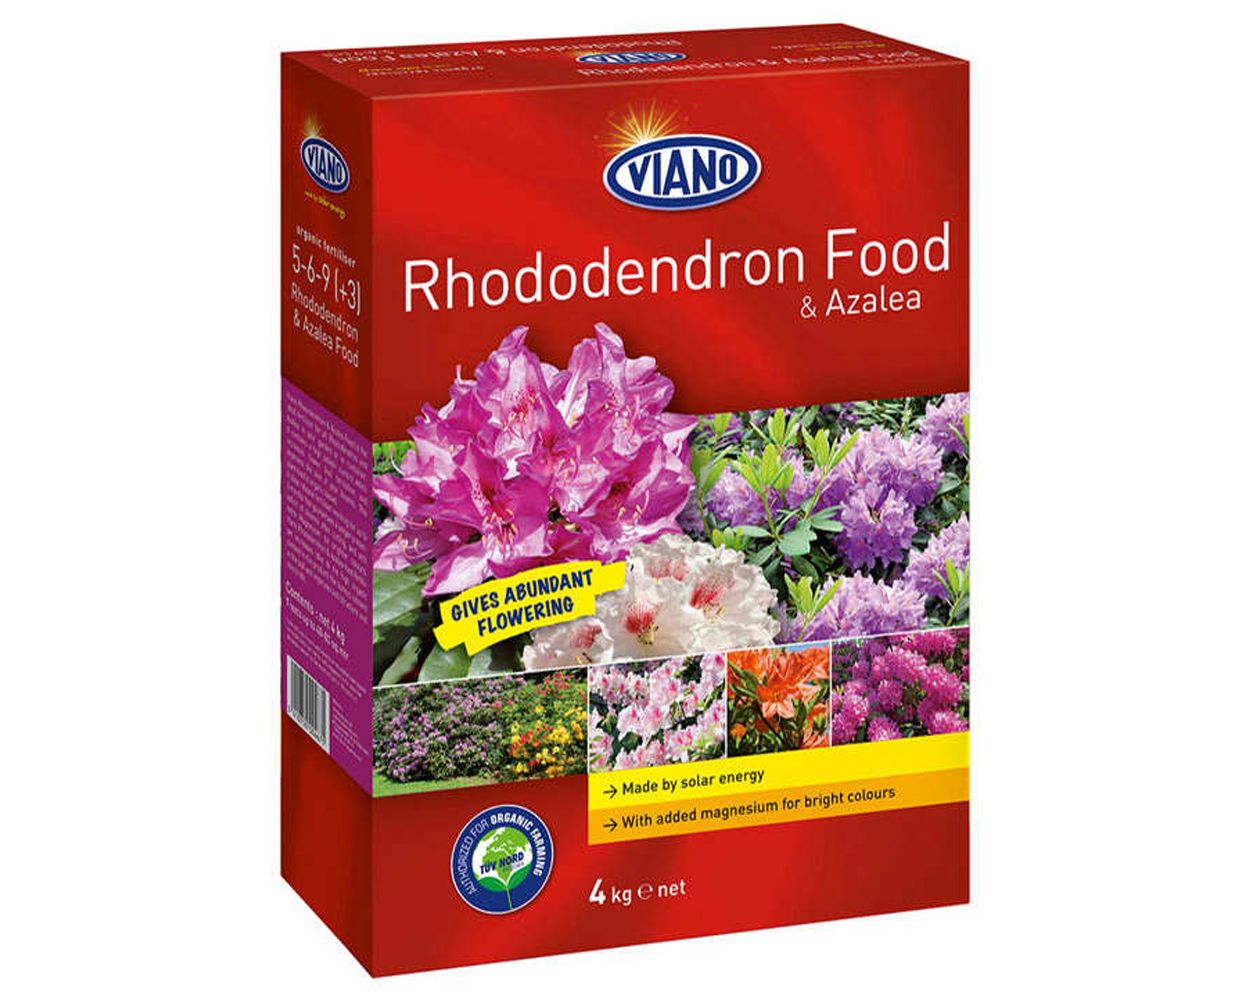 Viano Rhododendron & Azalea Food - 4kg